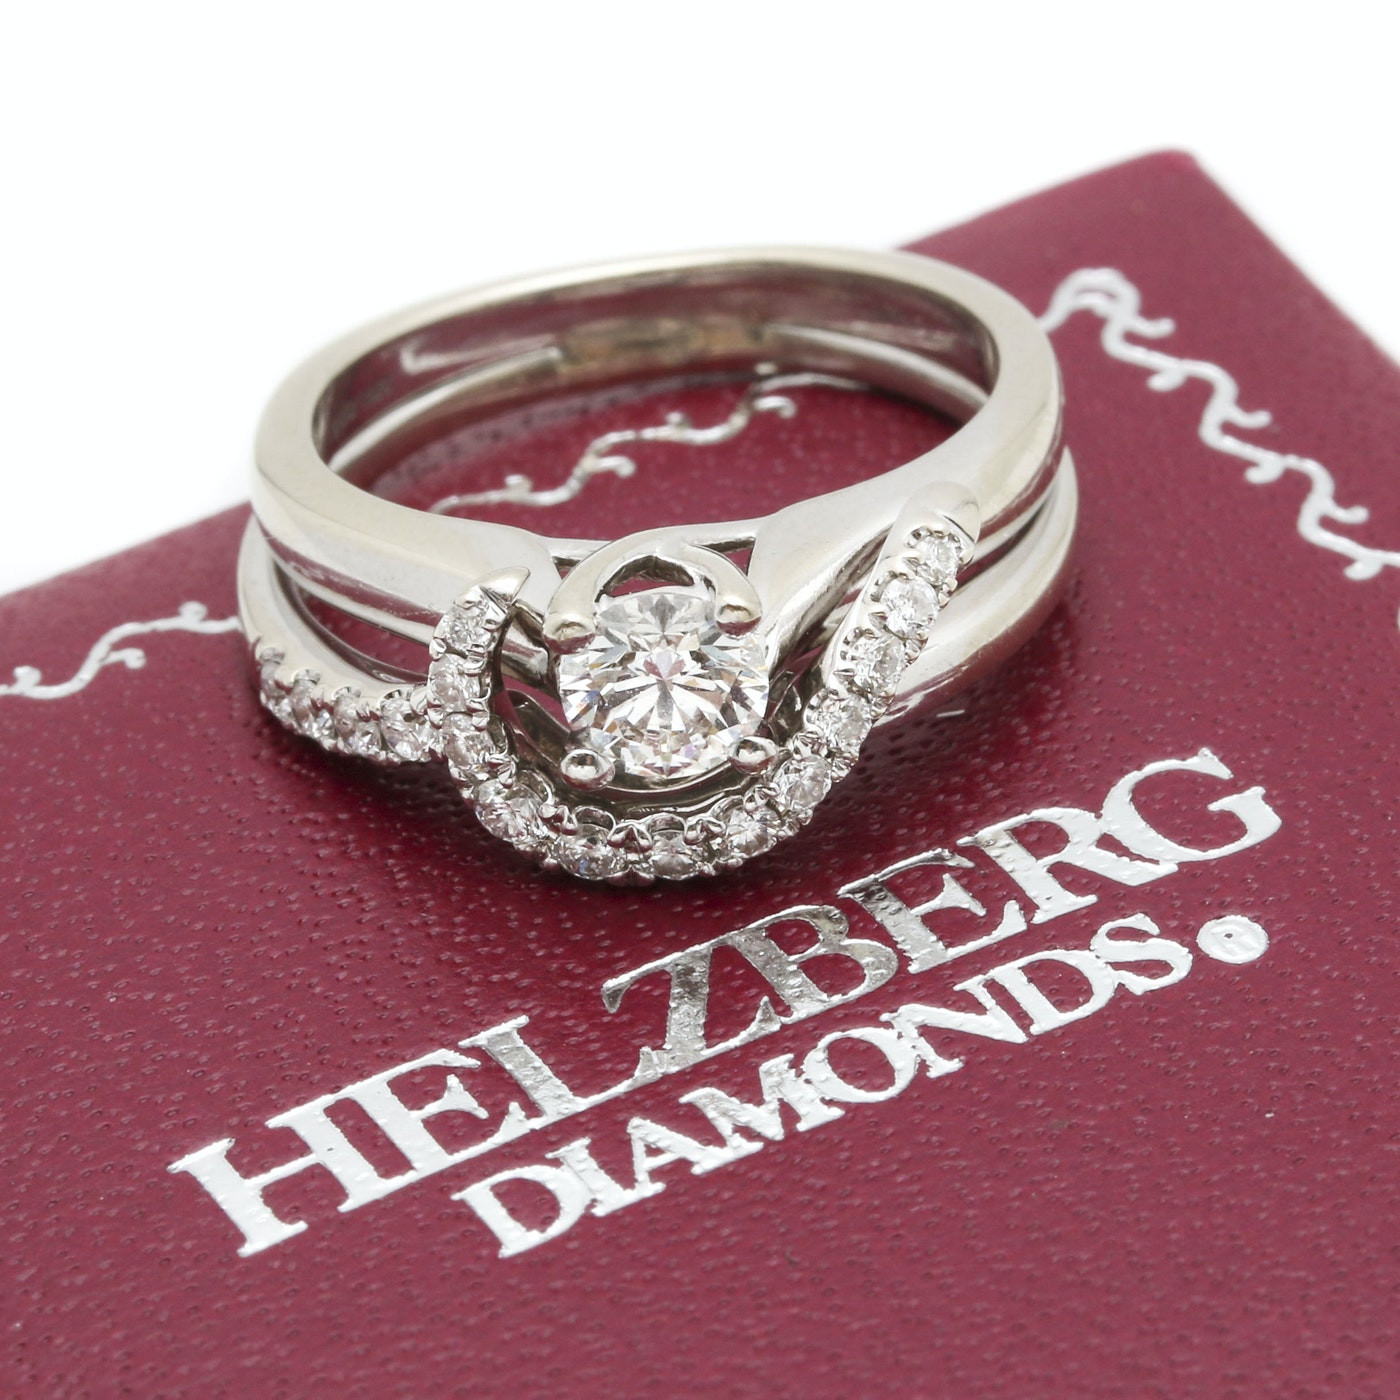 Helzberg Diamonds Engagement Rings
 18K White Gold Diamond Helzberg Engagement Ring with 14K